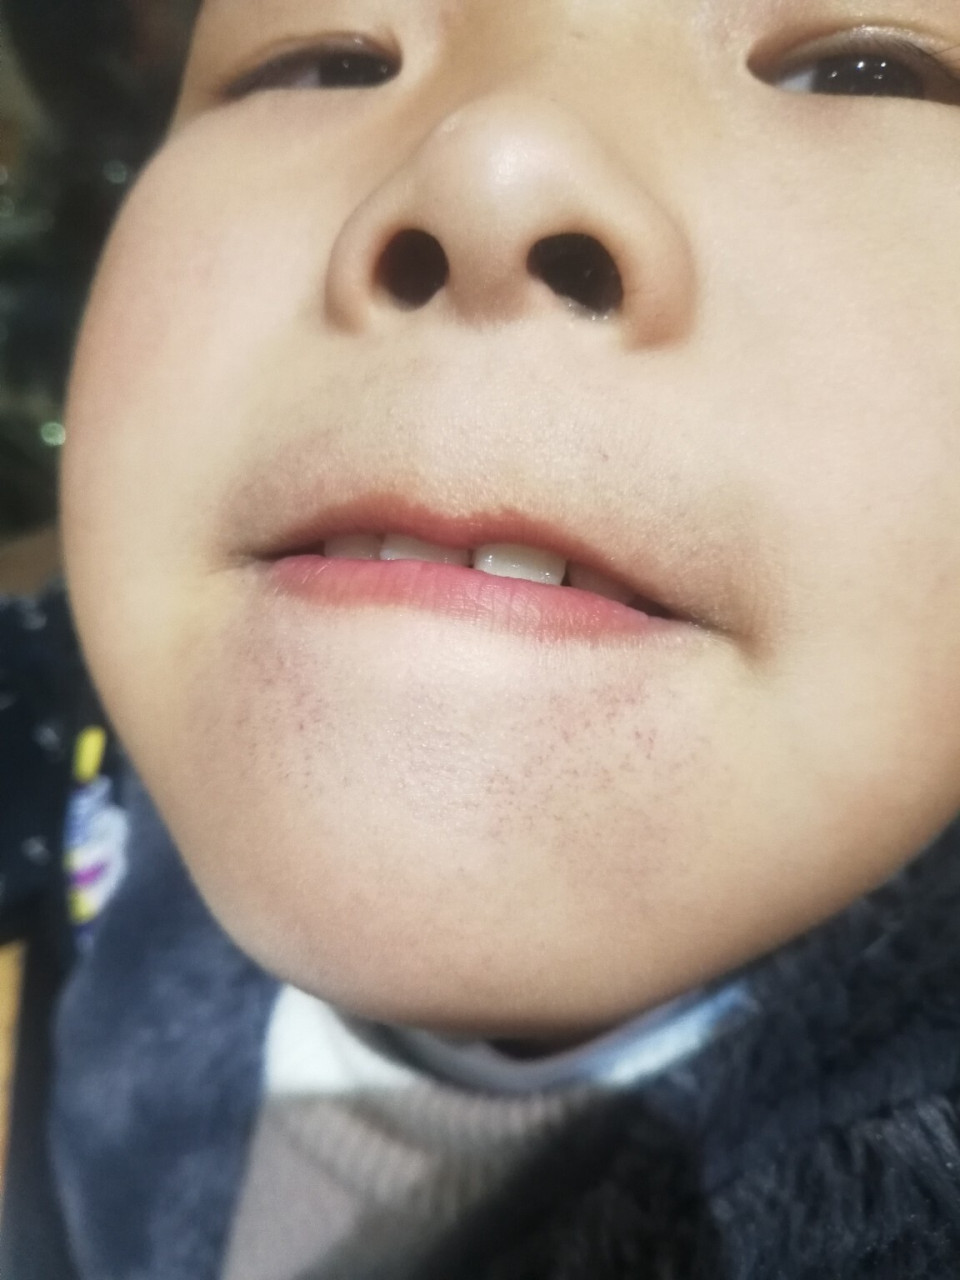 孩子的上下嘴唇周围都是红色的小点点,这是什么情况